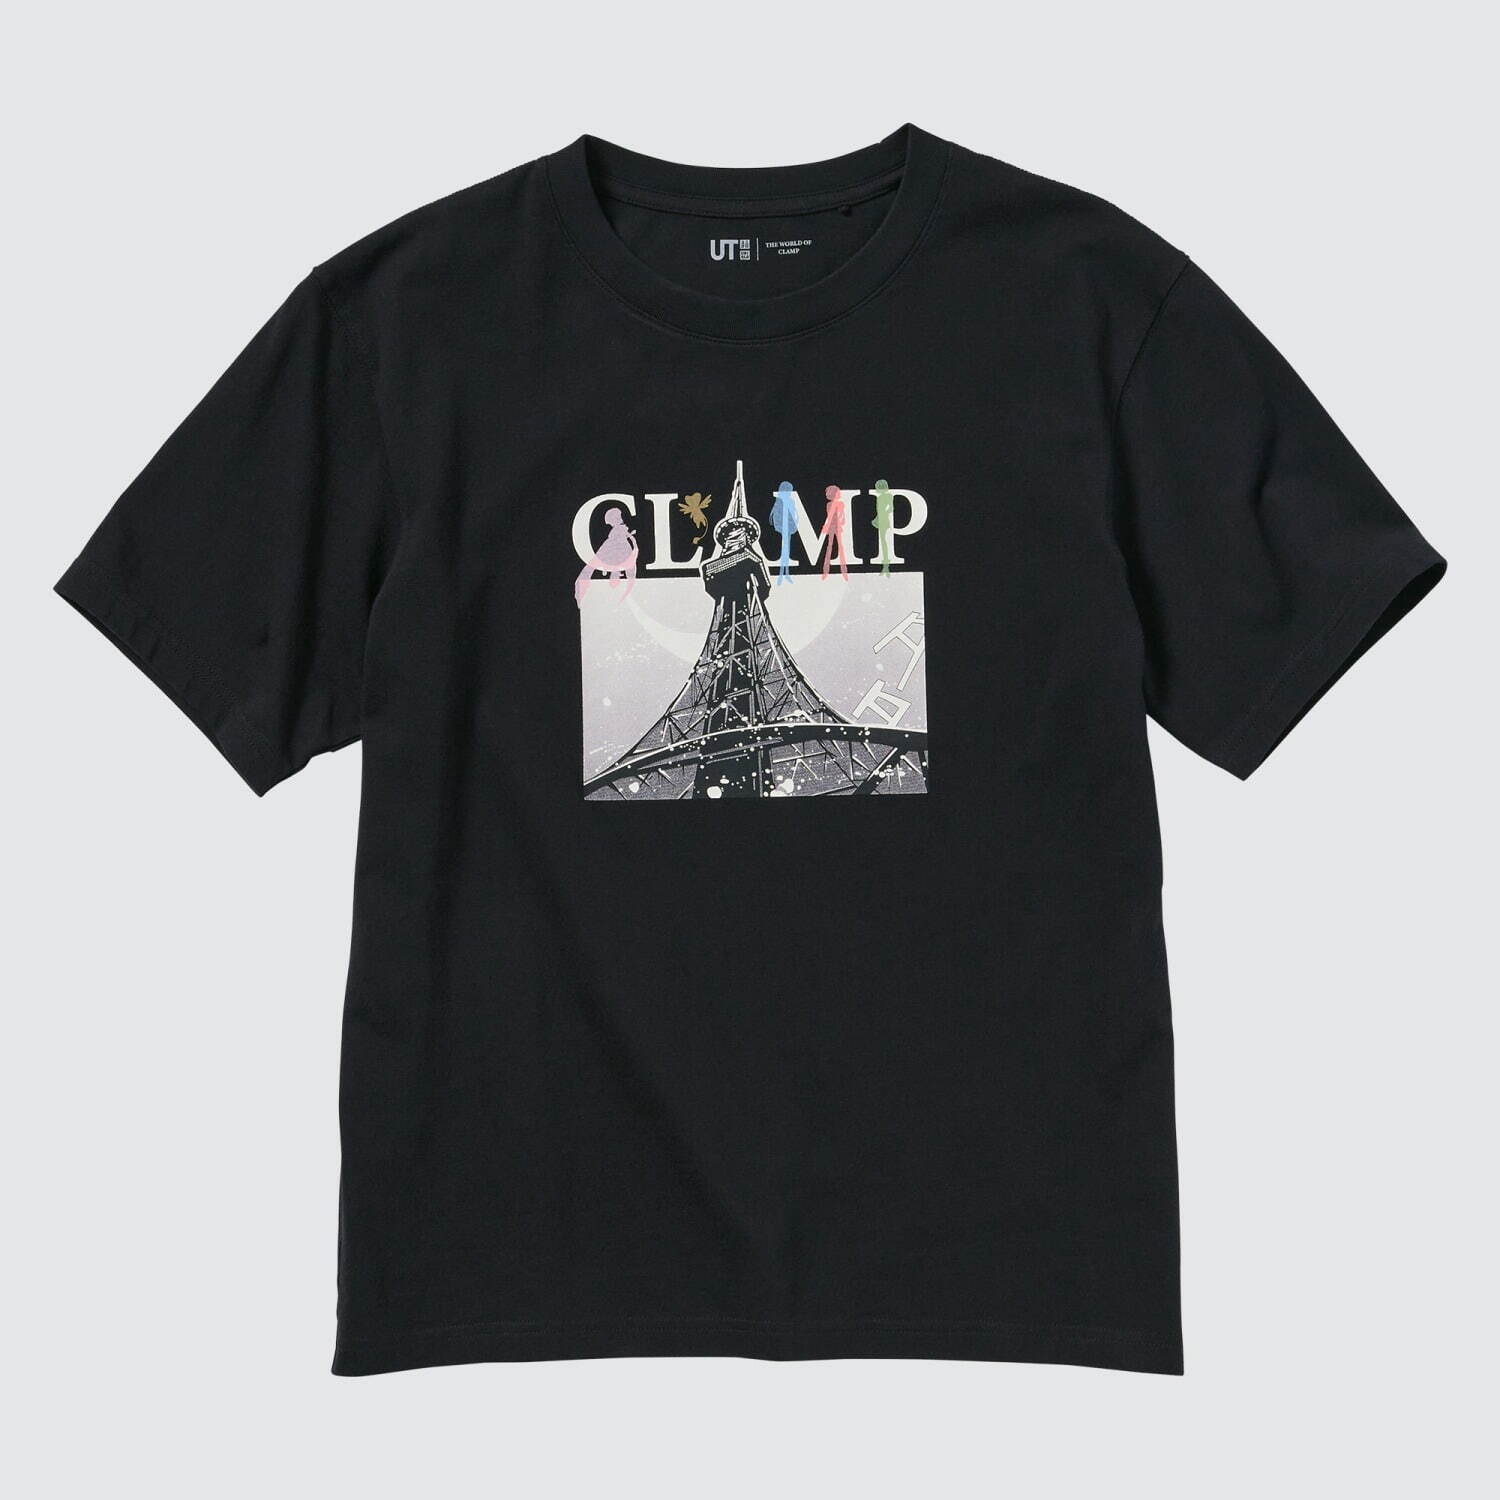 ユニクロ「UT」CLAMP人気4作品がTシャツに、『カードキャプターさくら 